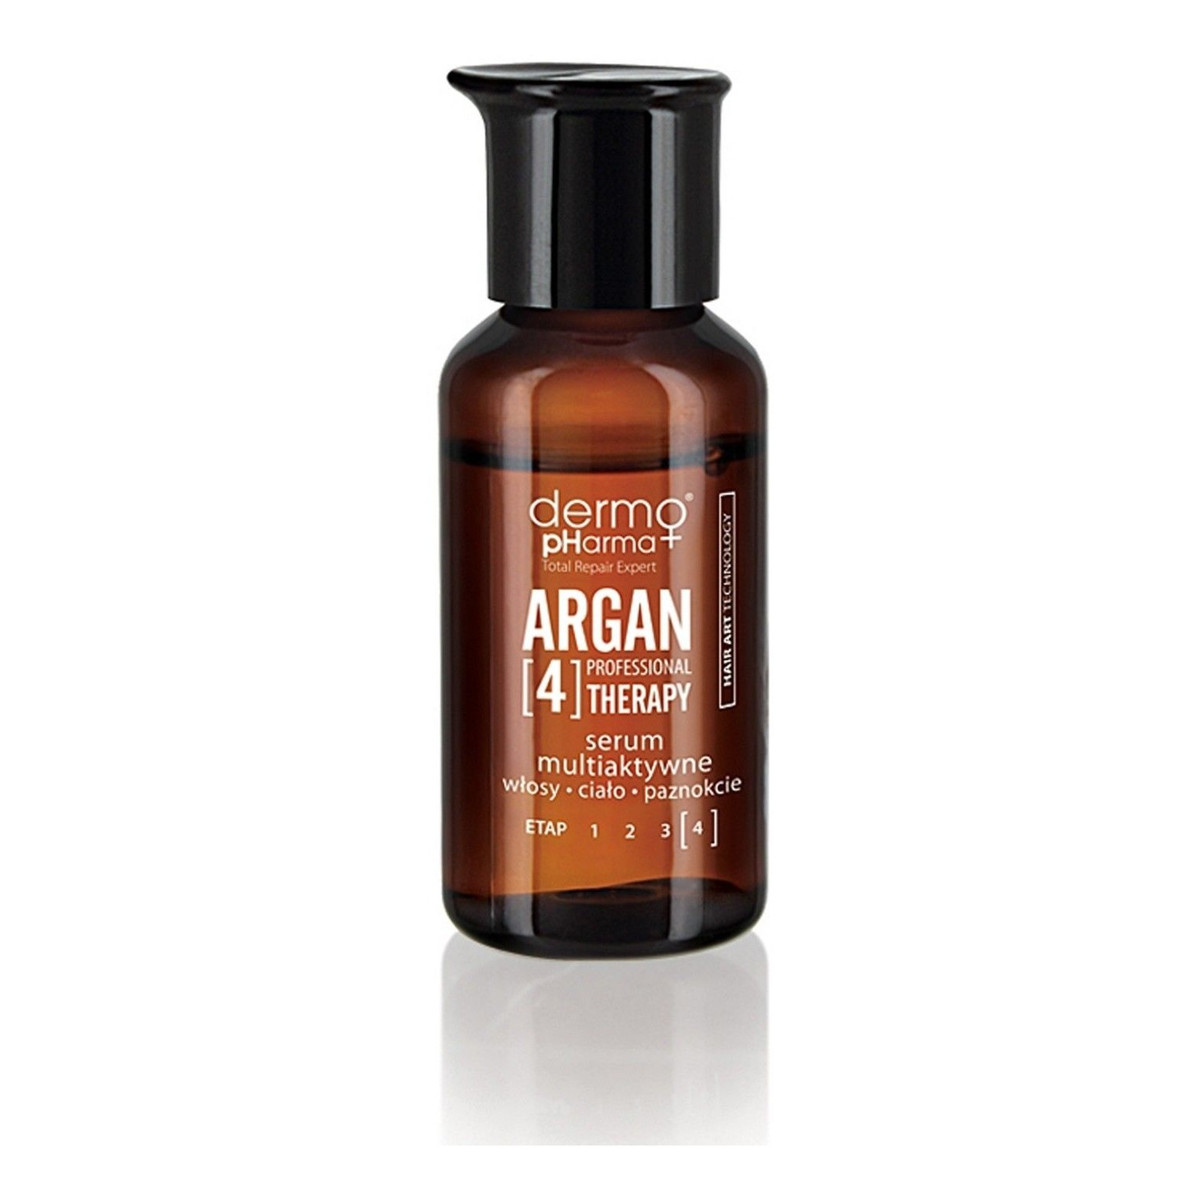 Dermo Pharma Argan Serum Multiaktywne Regenerujące-Nawilżające Do Włosów Ciała I Paznokci 10ml